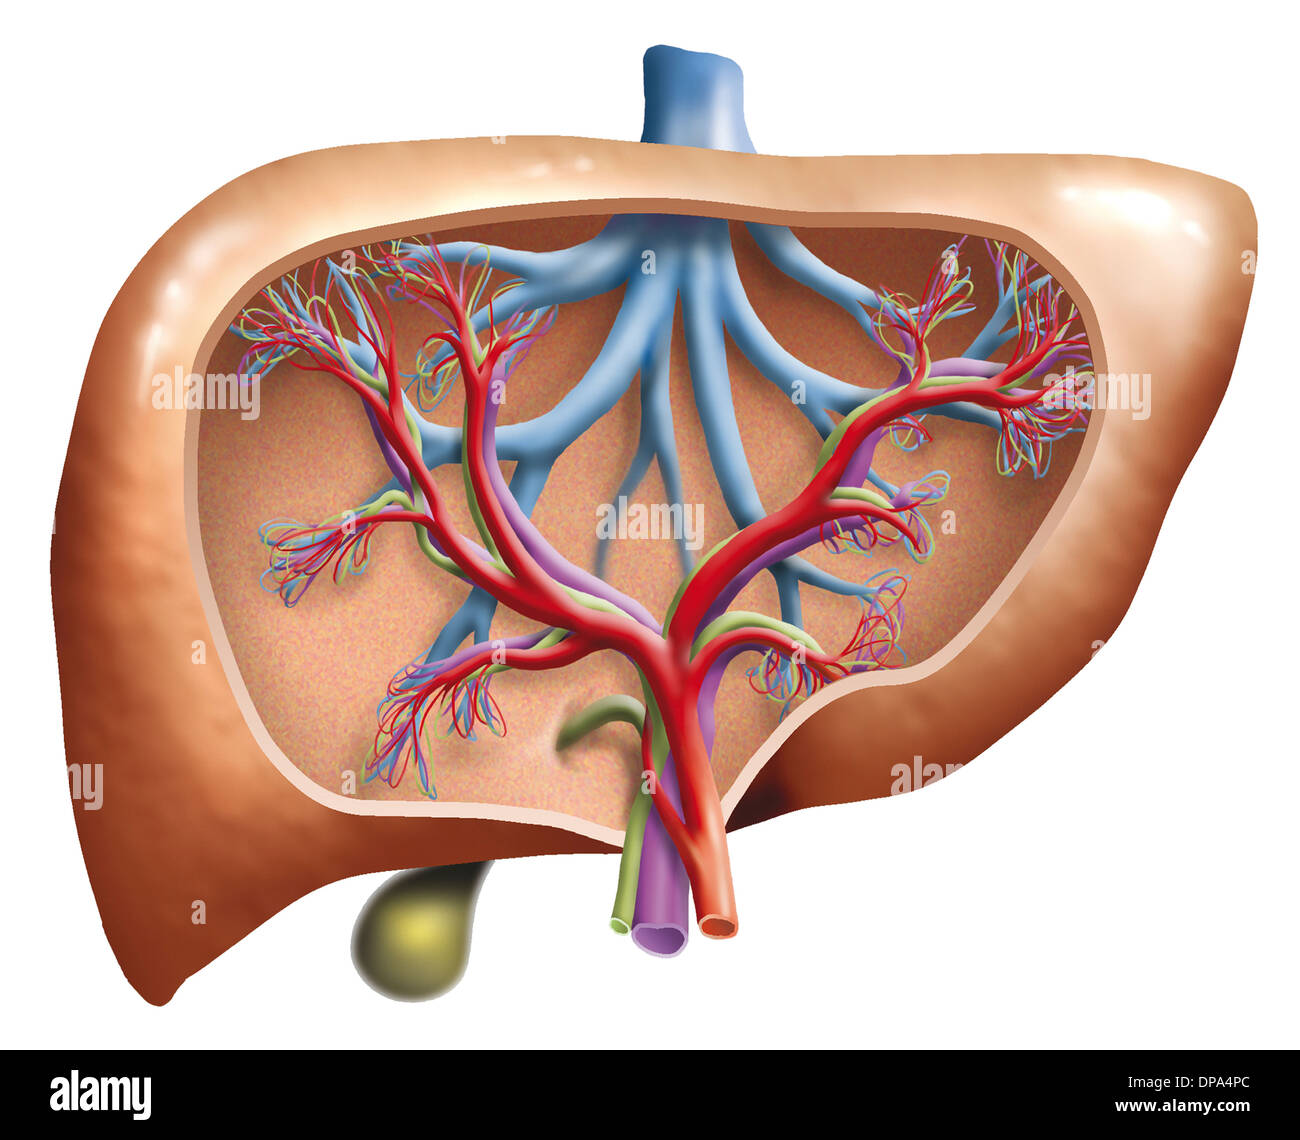 Sezione illustrazione di un fegato umano Foto Stock